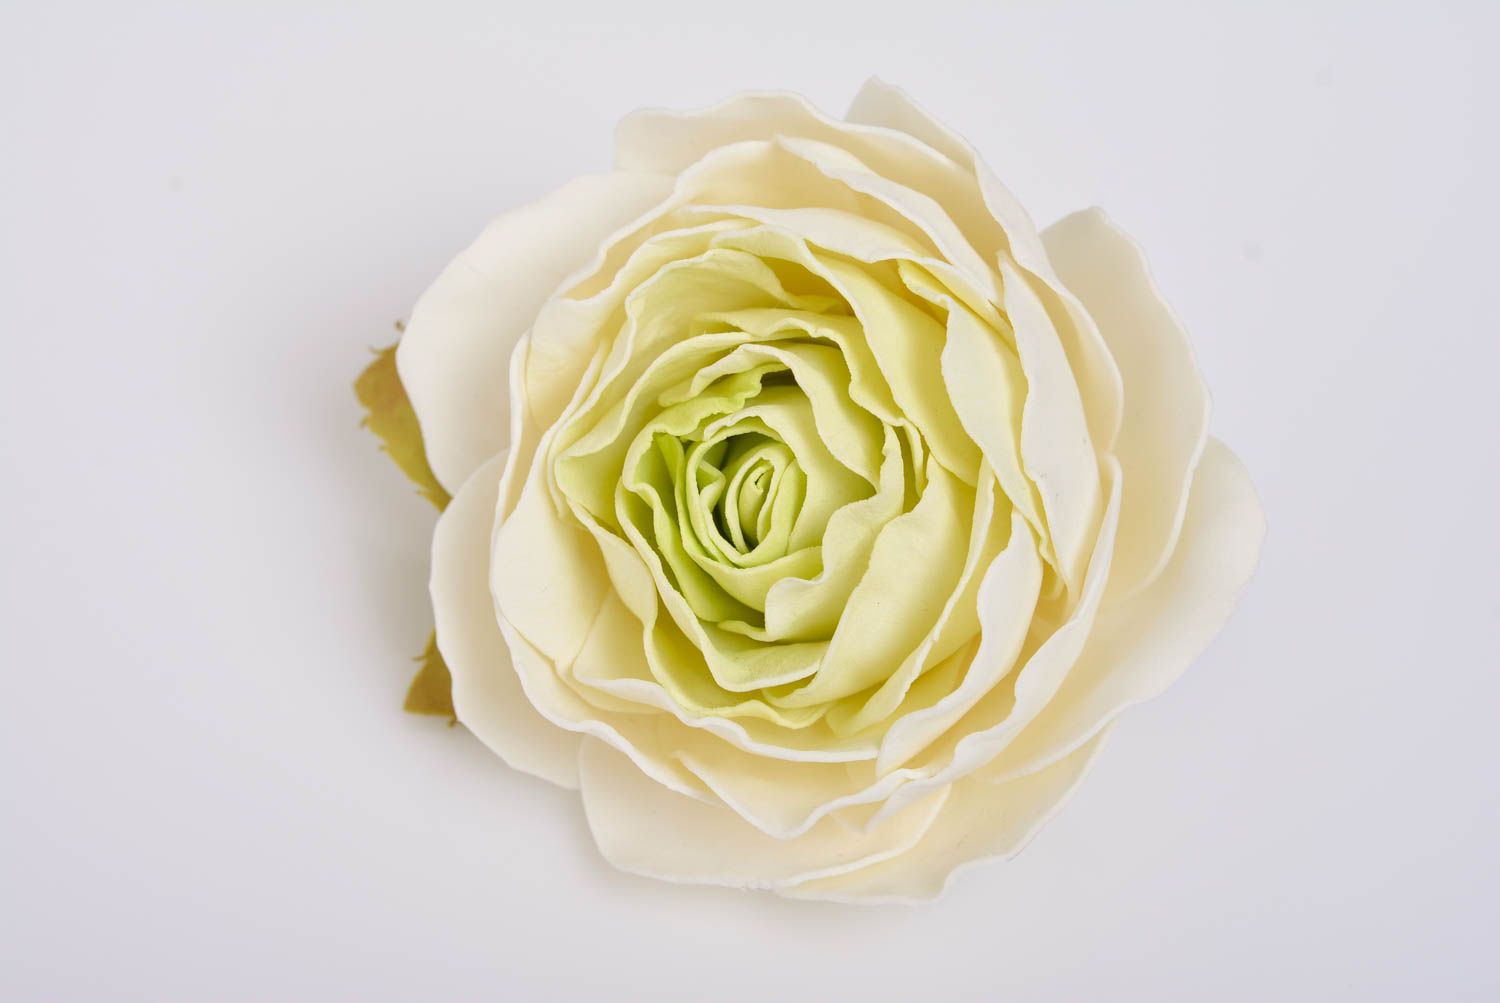 Резинка для волос с цветком розы из фоамирана большая пышная ручной работы фото 5